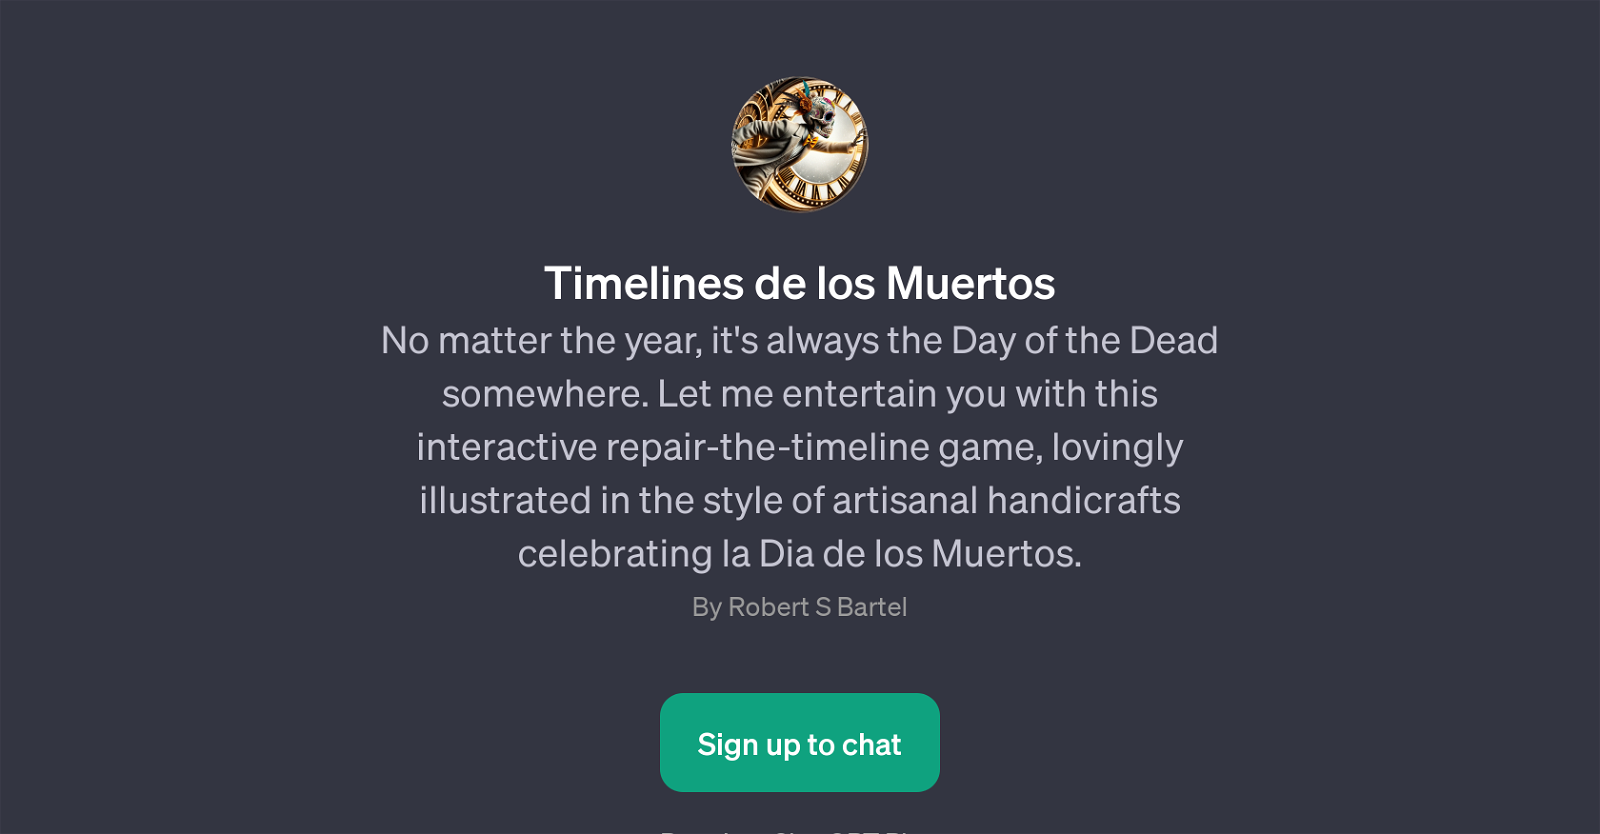 Timelines de los Muertos website